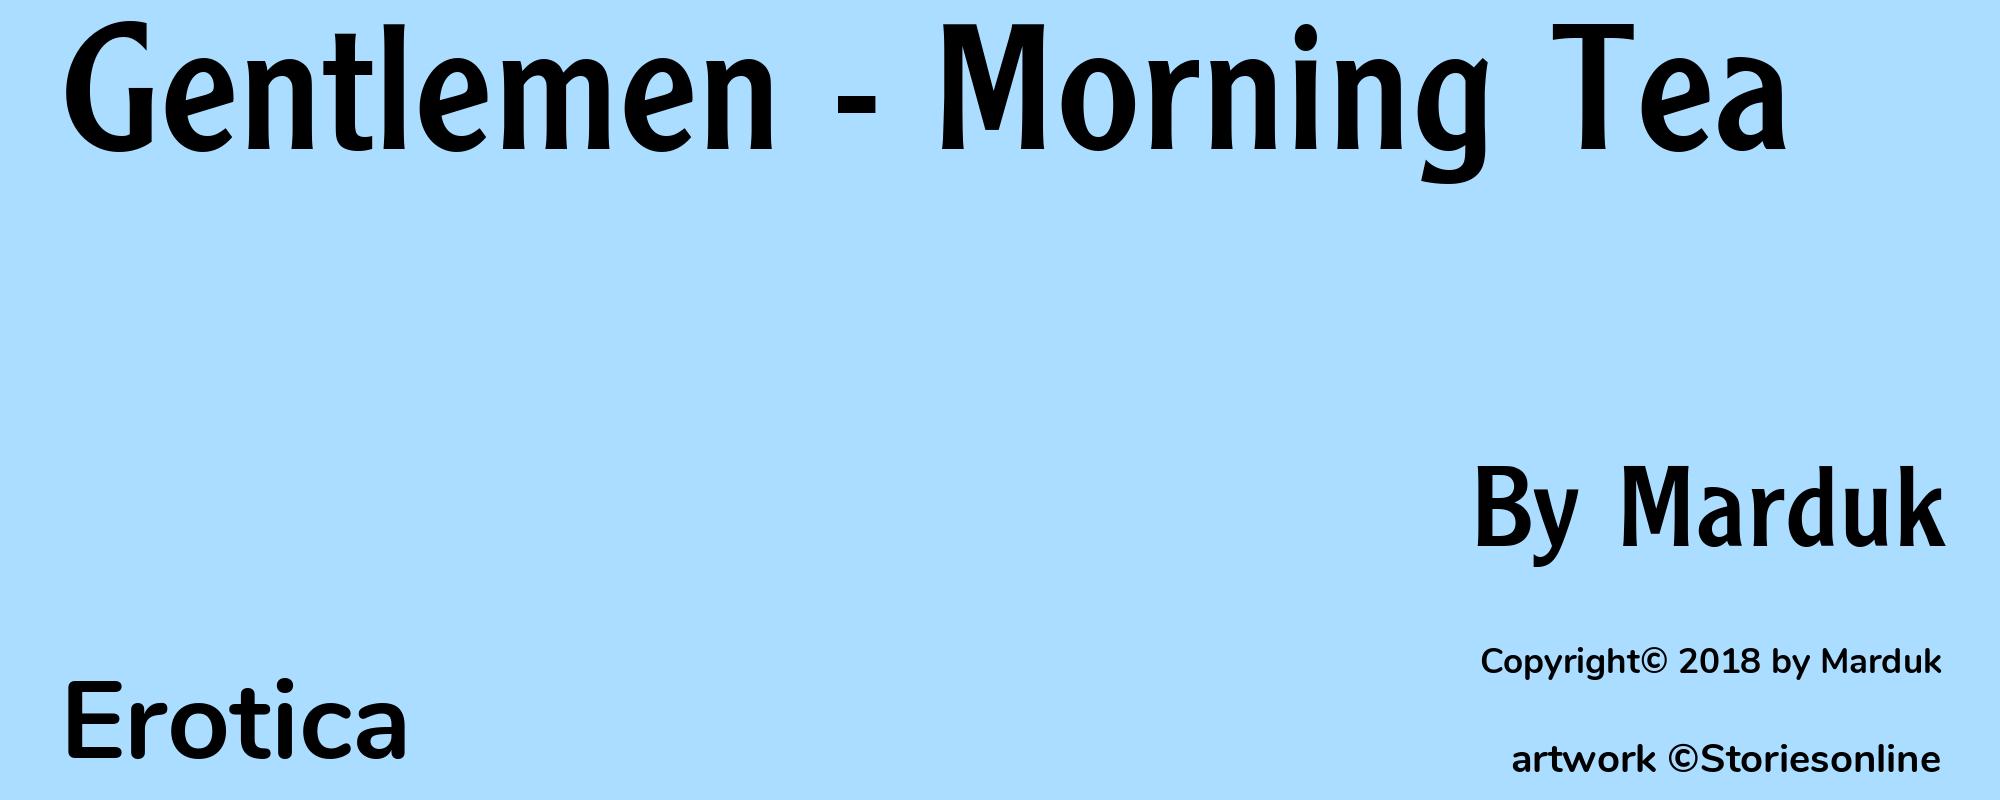 Gentlemen - Morning Tea - Cover